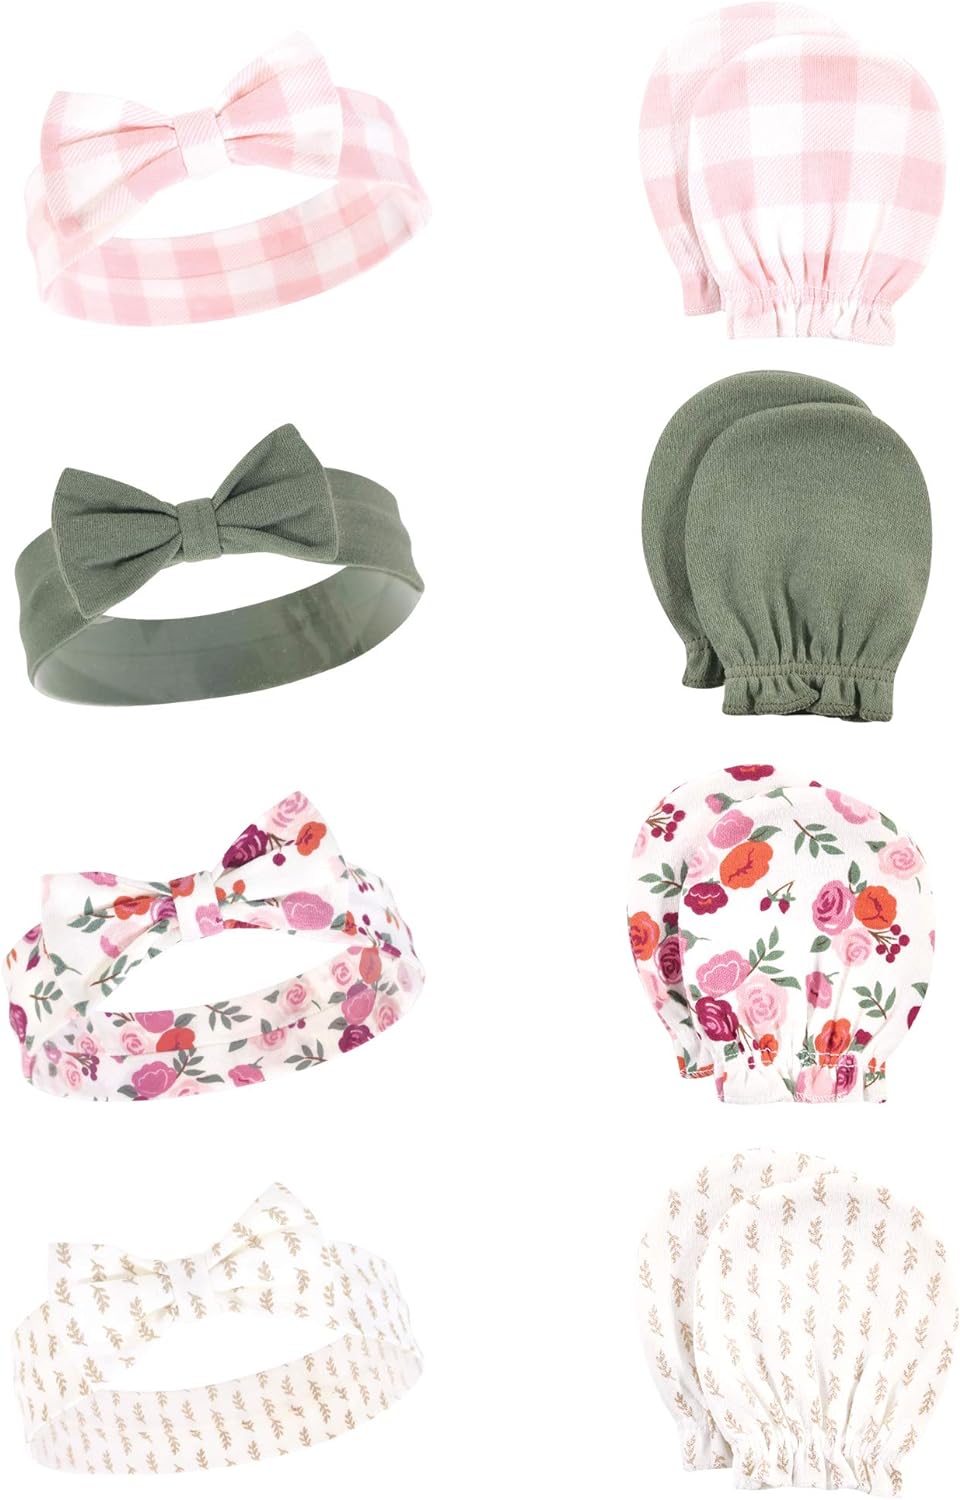 Hudson Baby Baby Girls' Cotton Headband and Scratch Mitten Set